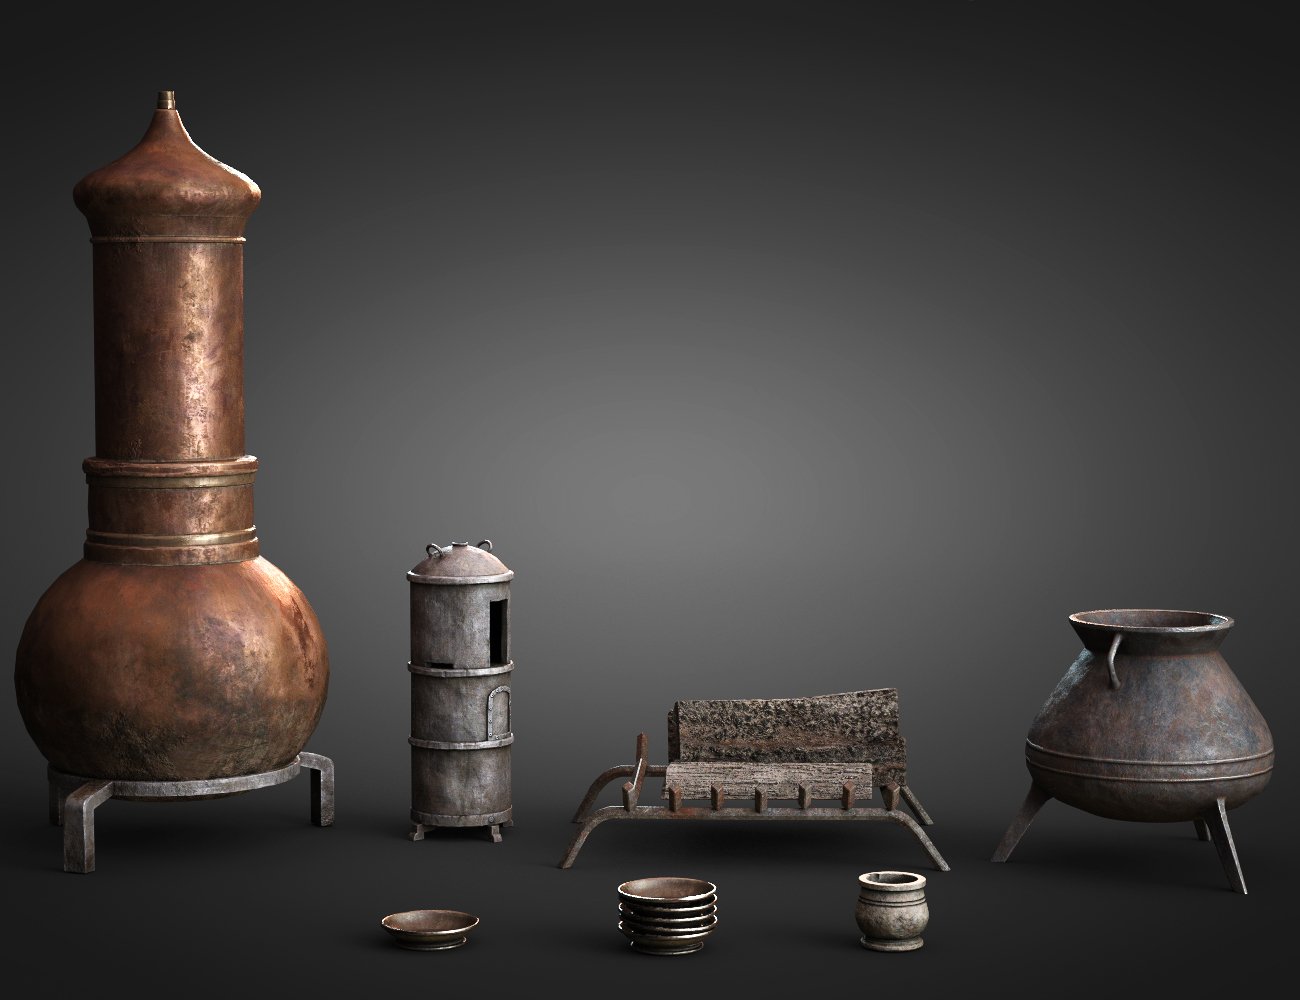 The Alchemist Workshop Props - Cook Set by: Dekogon Studios, 3D Models by Daz 3D